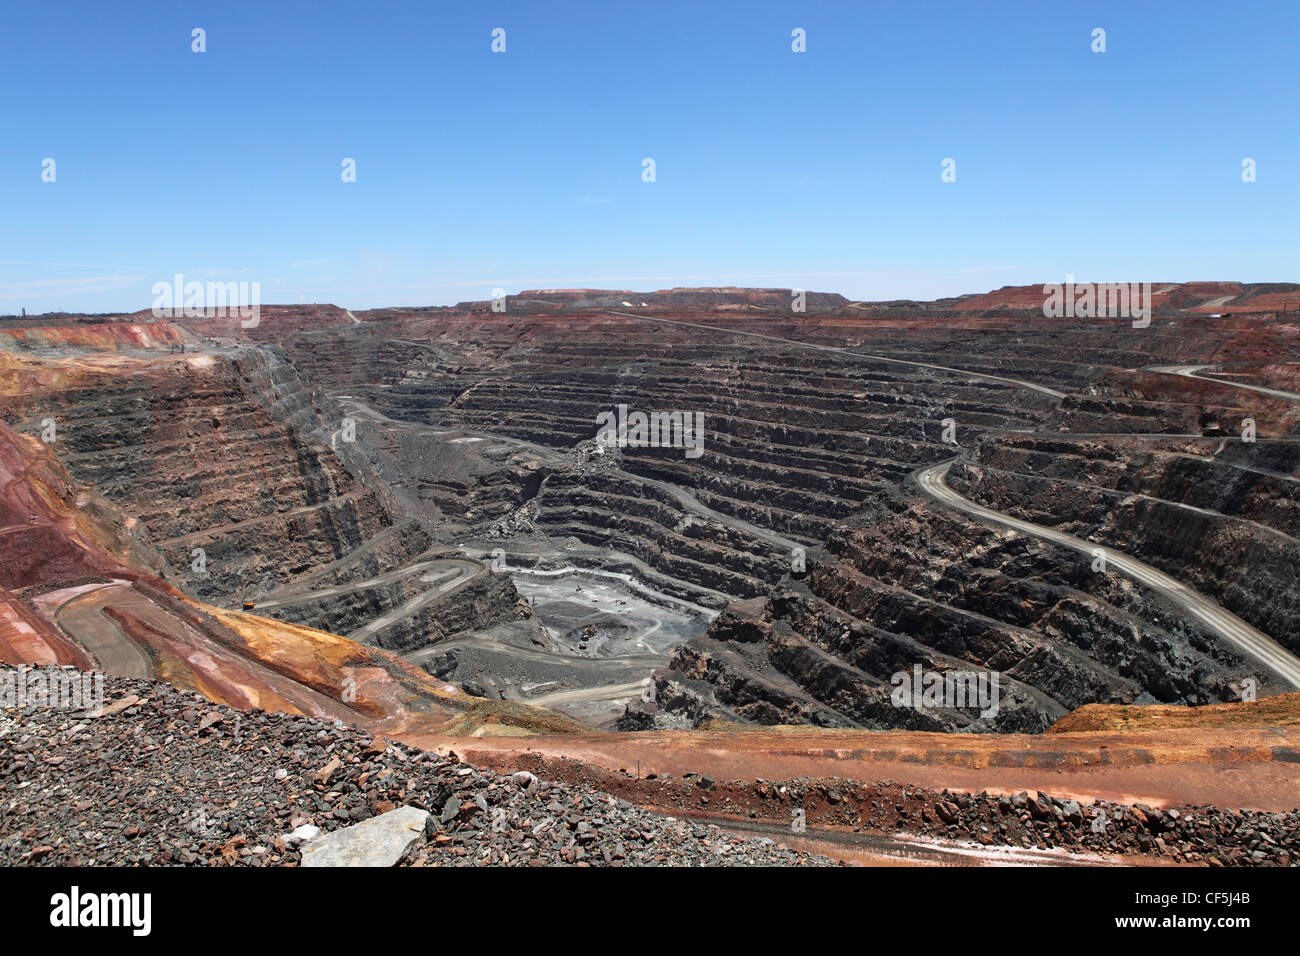 The Super Pit goldmine at Kalgoorlie-Boulder, Western Australia. Stock Photo